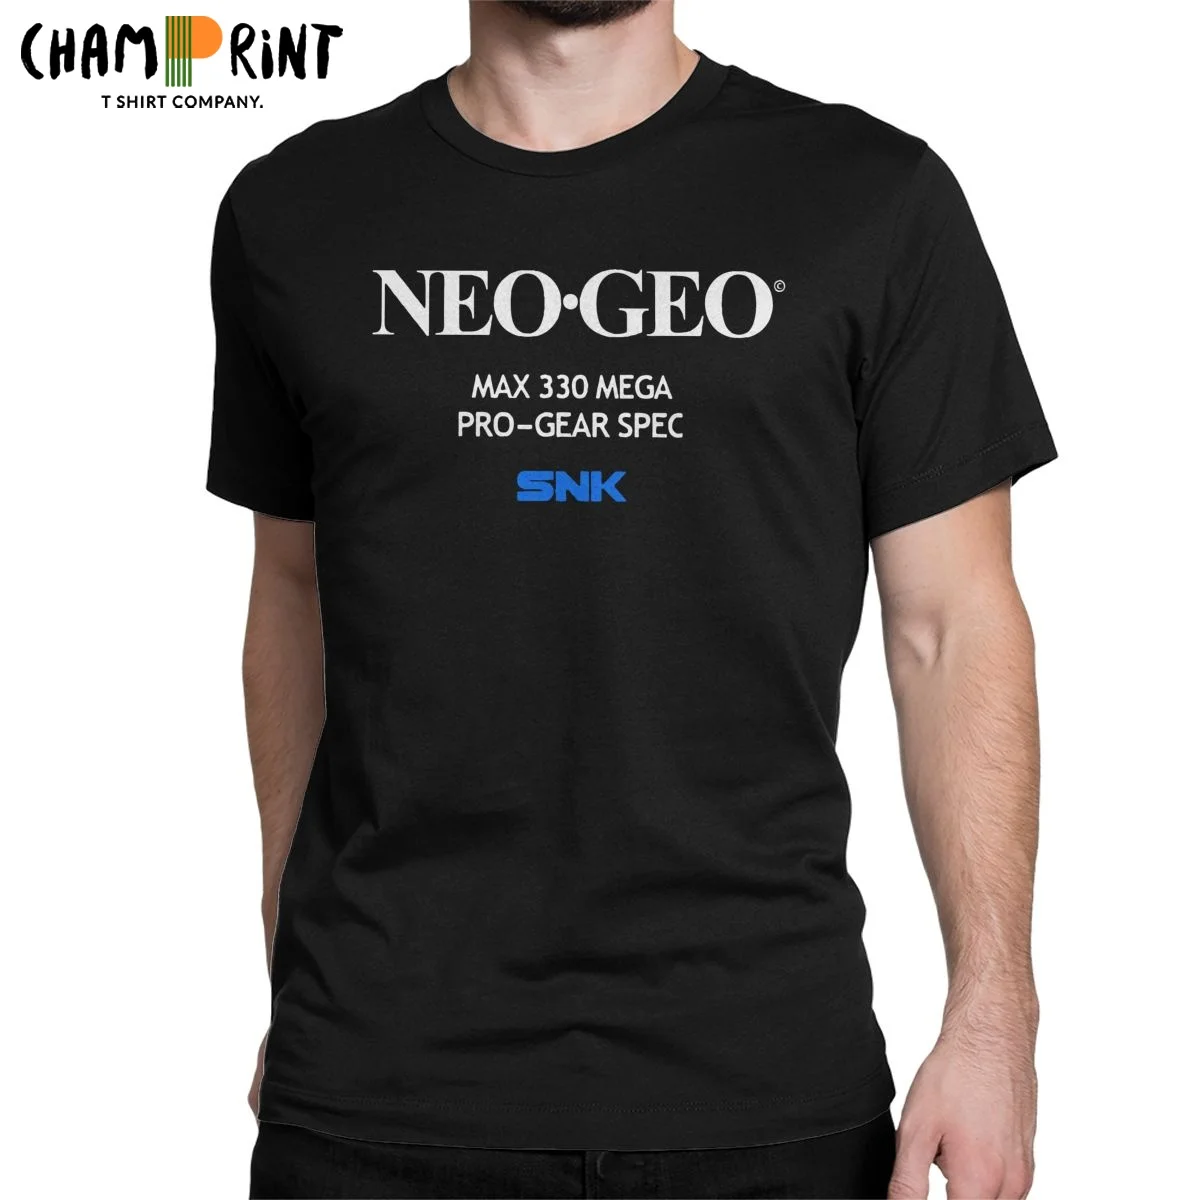 Camisetas de manga corta para hombre, camisa de cuello redondo 100% de algodón, divertida, de la pantalla de inicio de Neo Geo, Idea de regalo